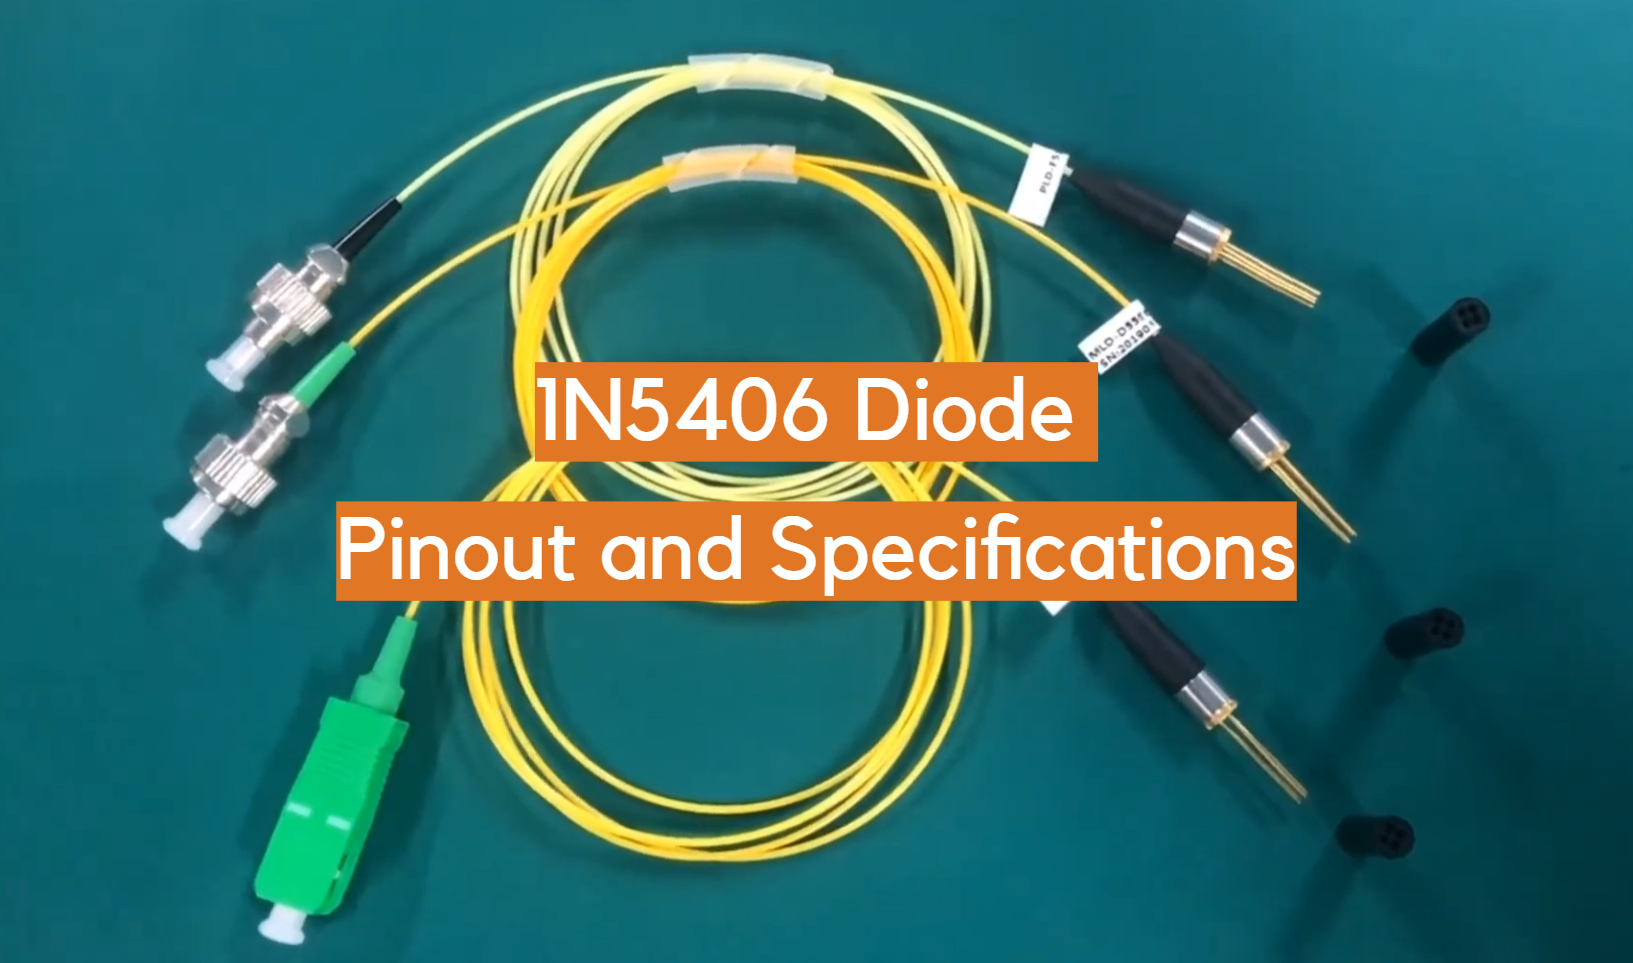 Pinout y especificaciones del diodo 1N5406